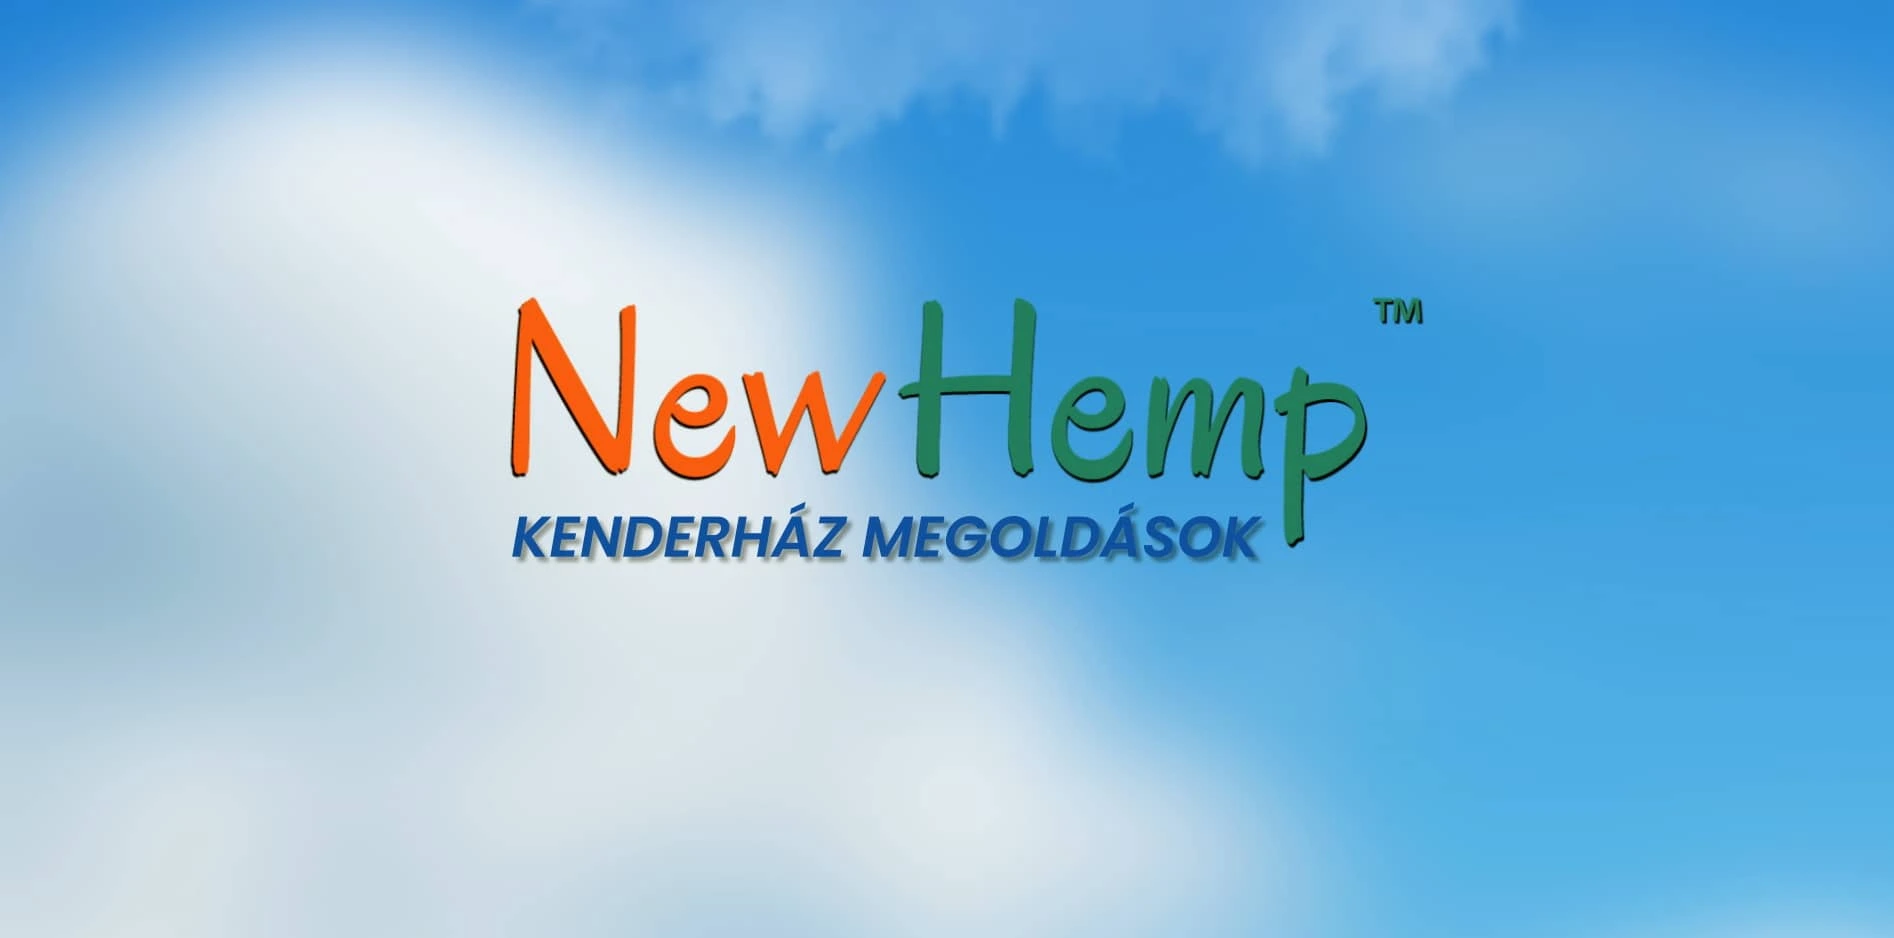 New Hemp - Kenderház megoldások